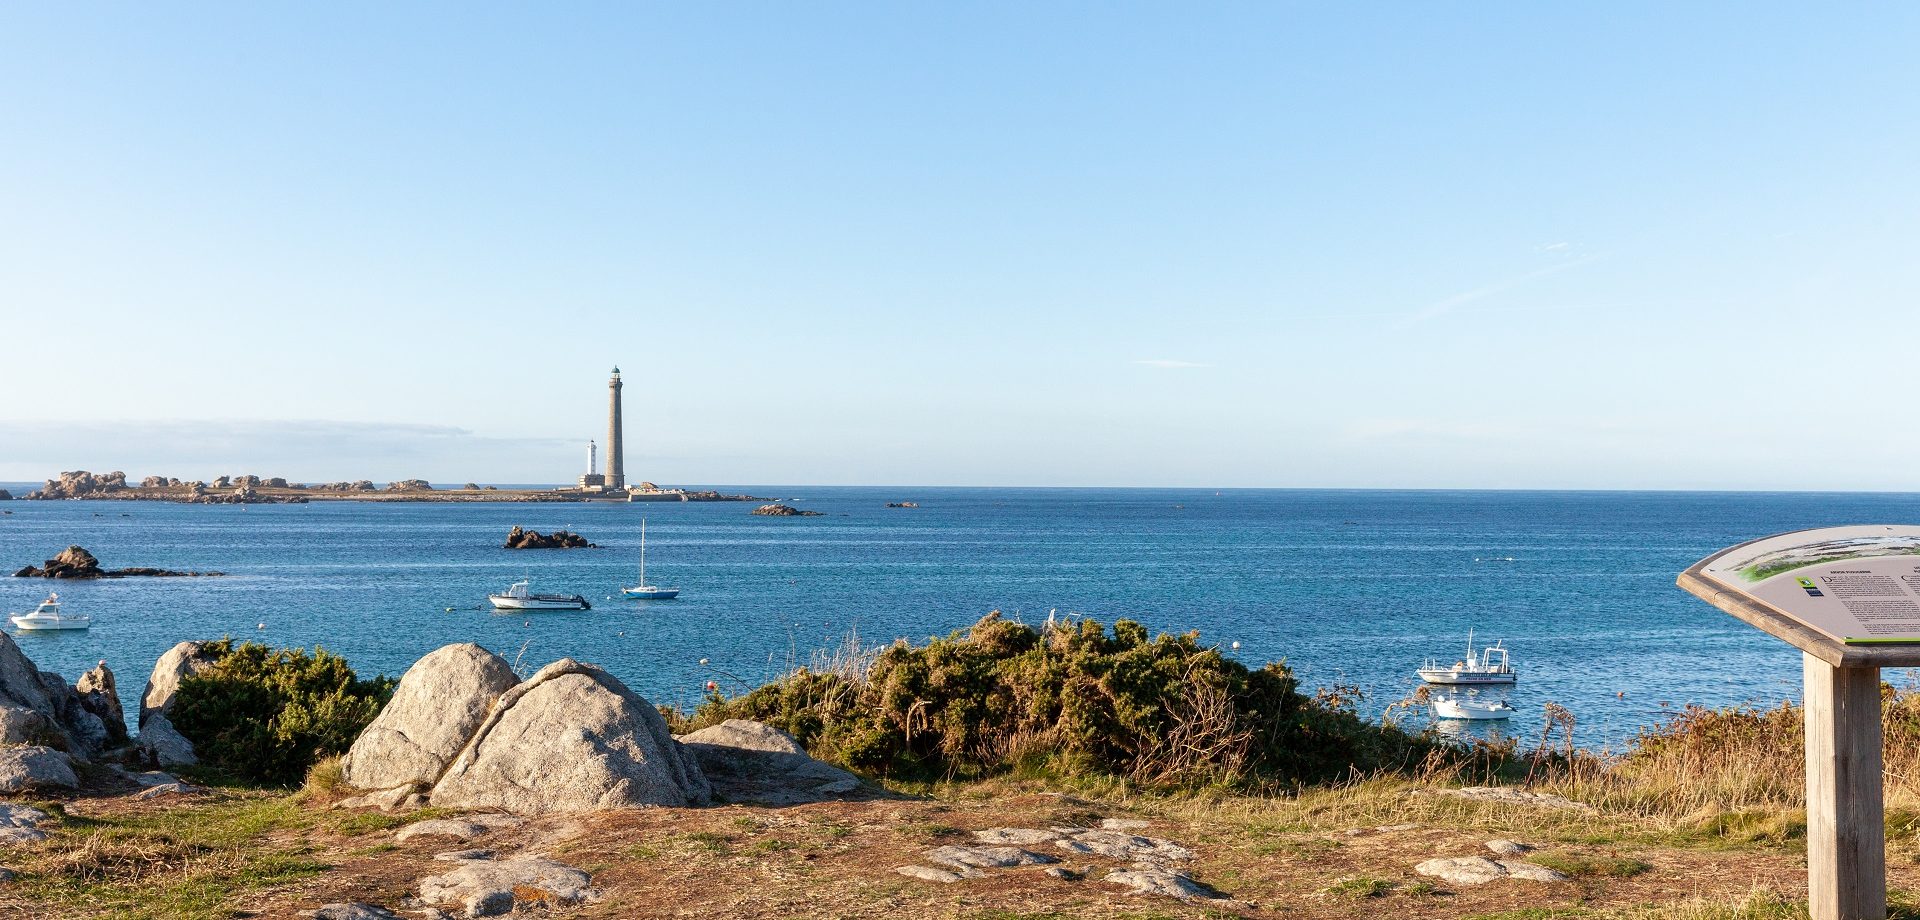 Le GR34 avec vue sur le phare de l'île vierge ©RAGOT Eugenie